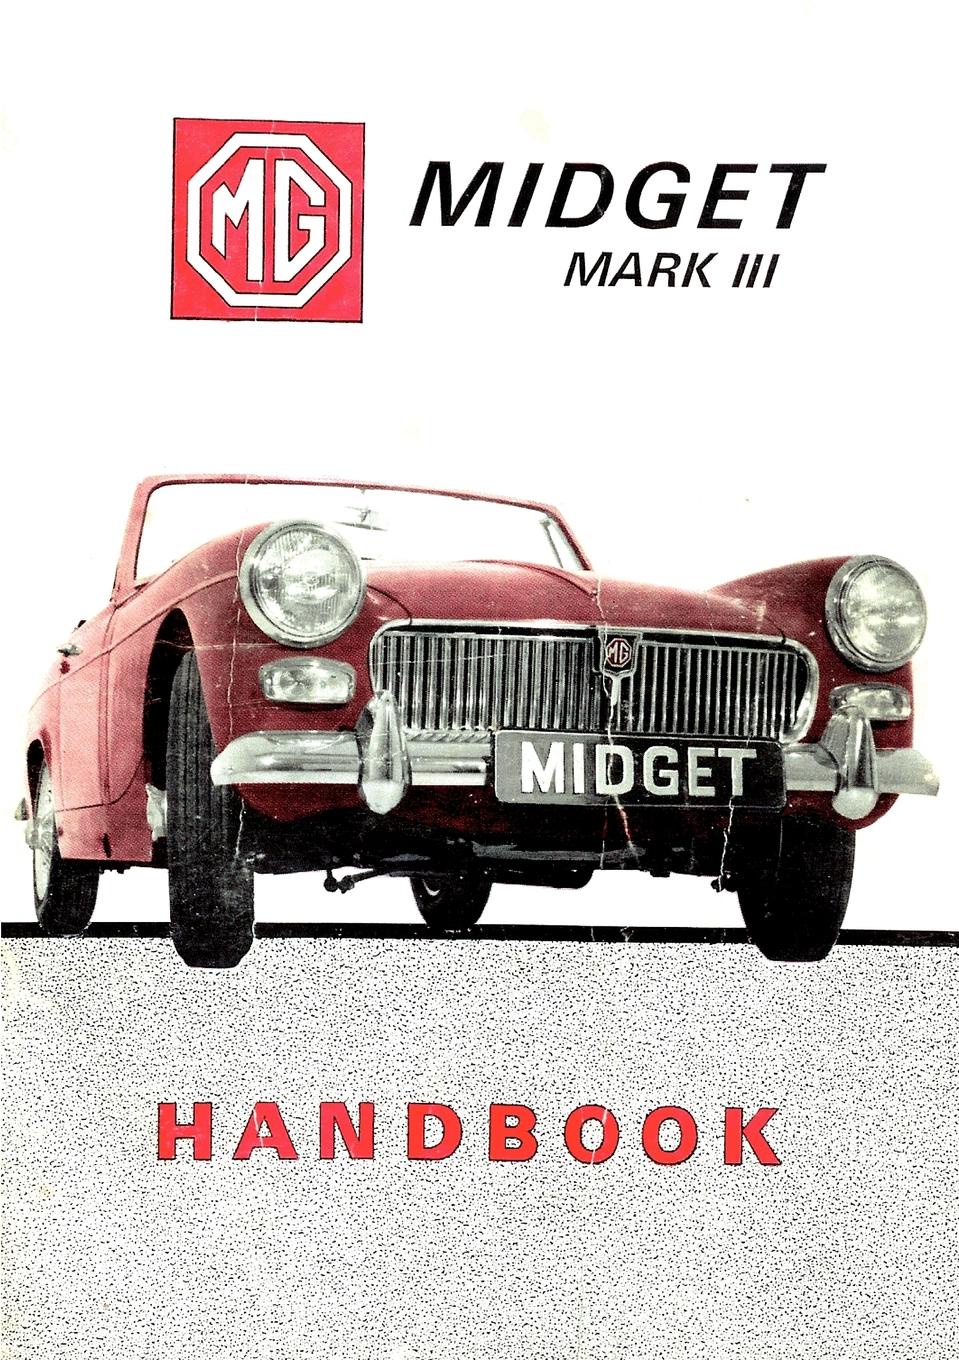 фото MG Midget MMark III Handbook